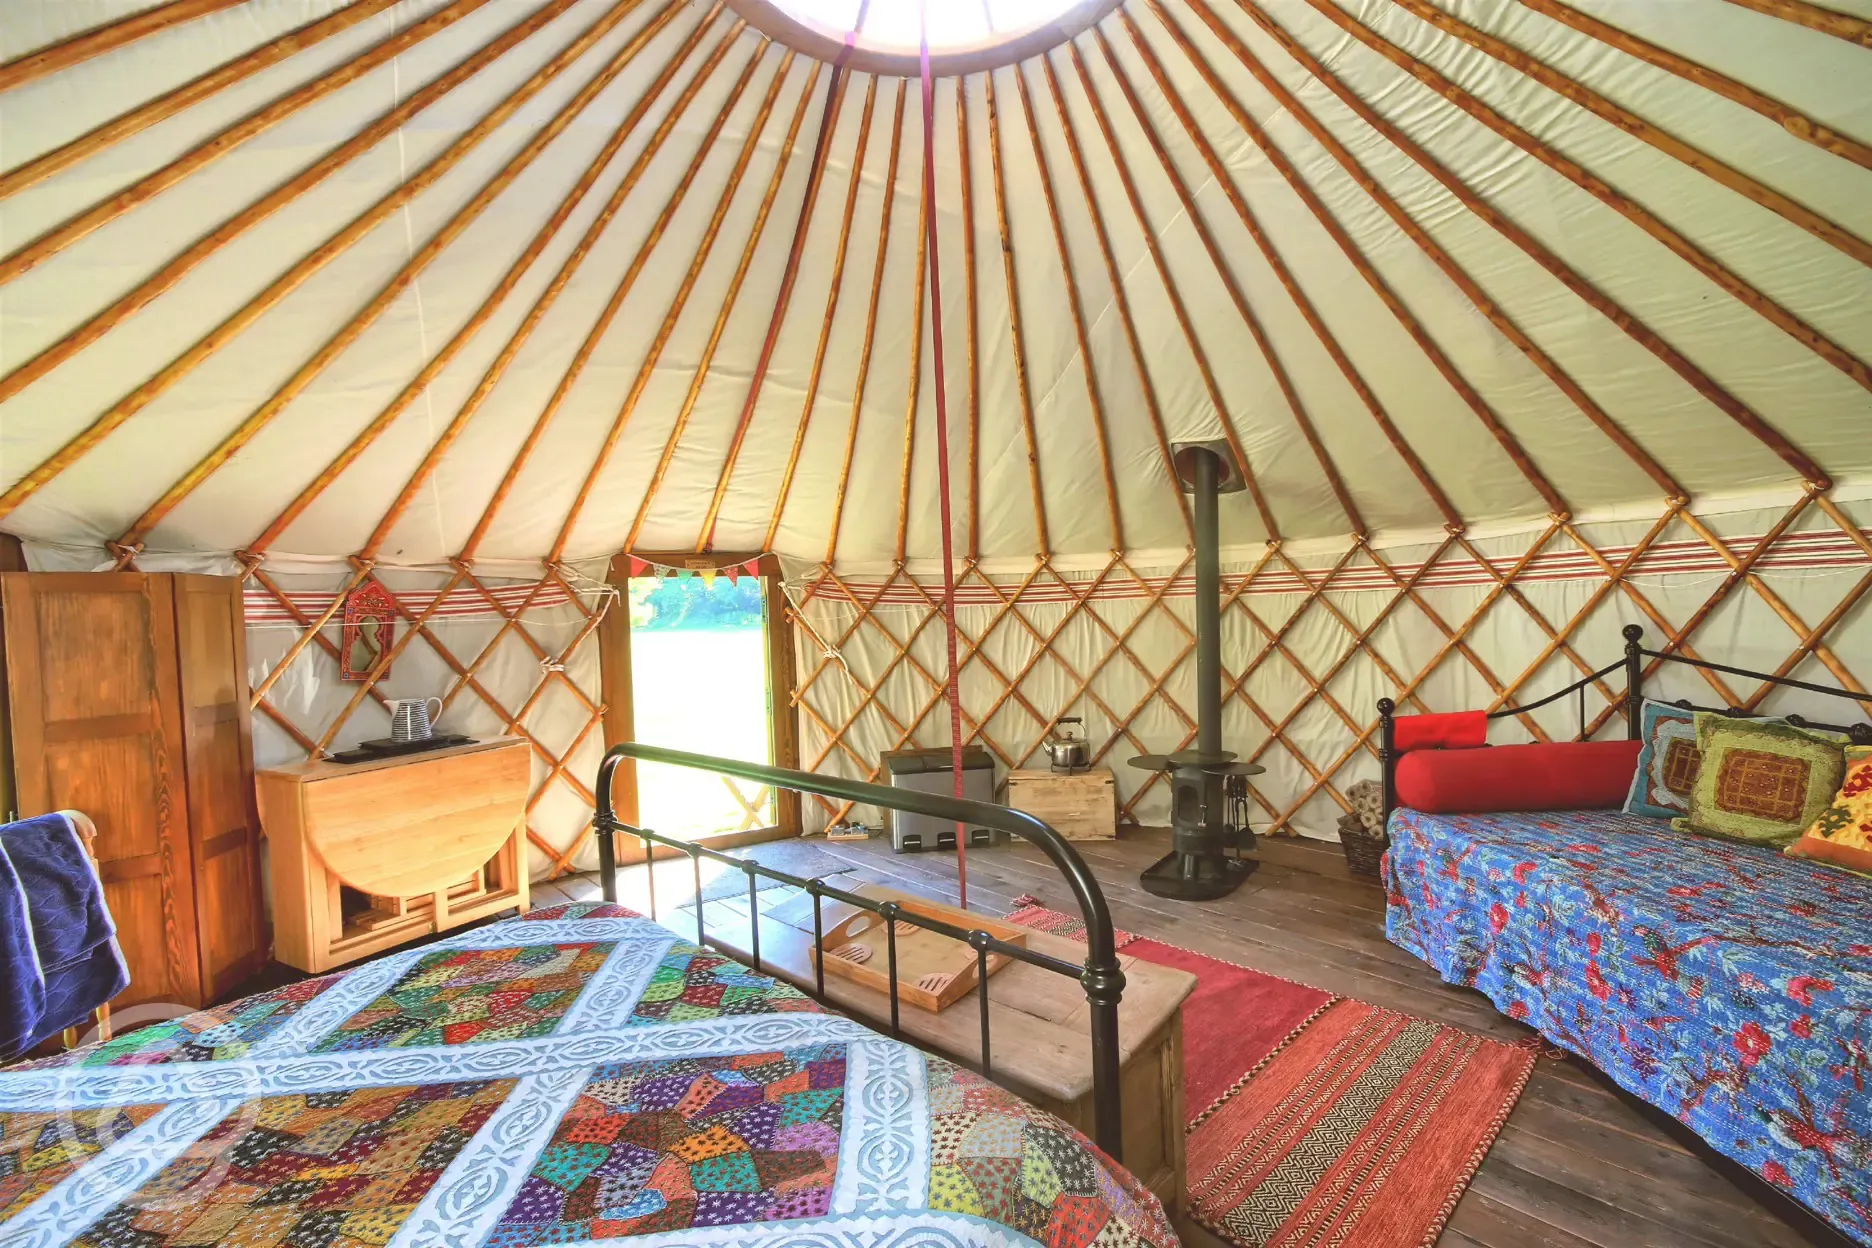 Luxury Yurt Interior